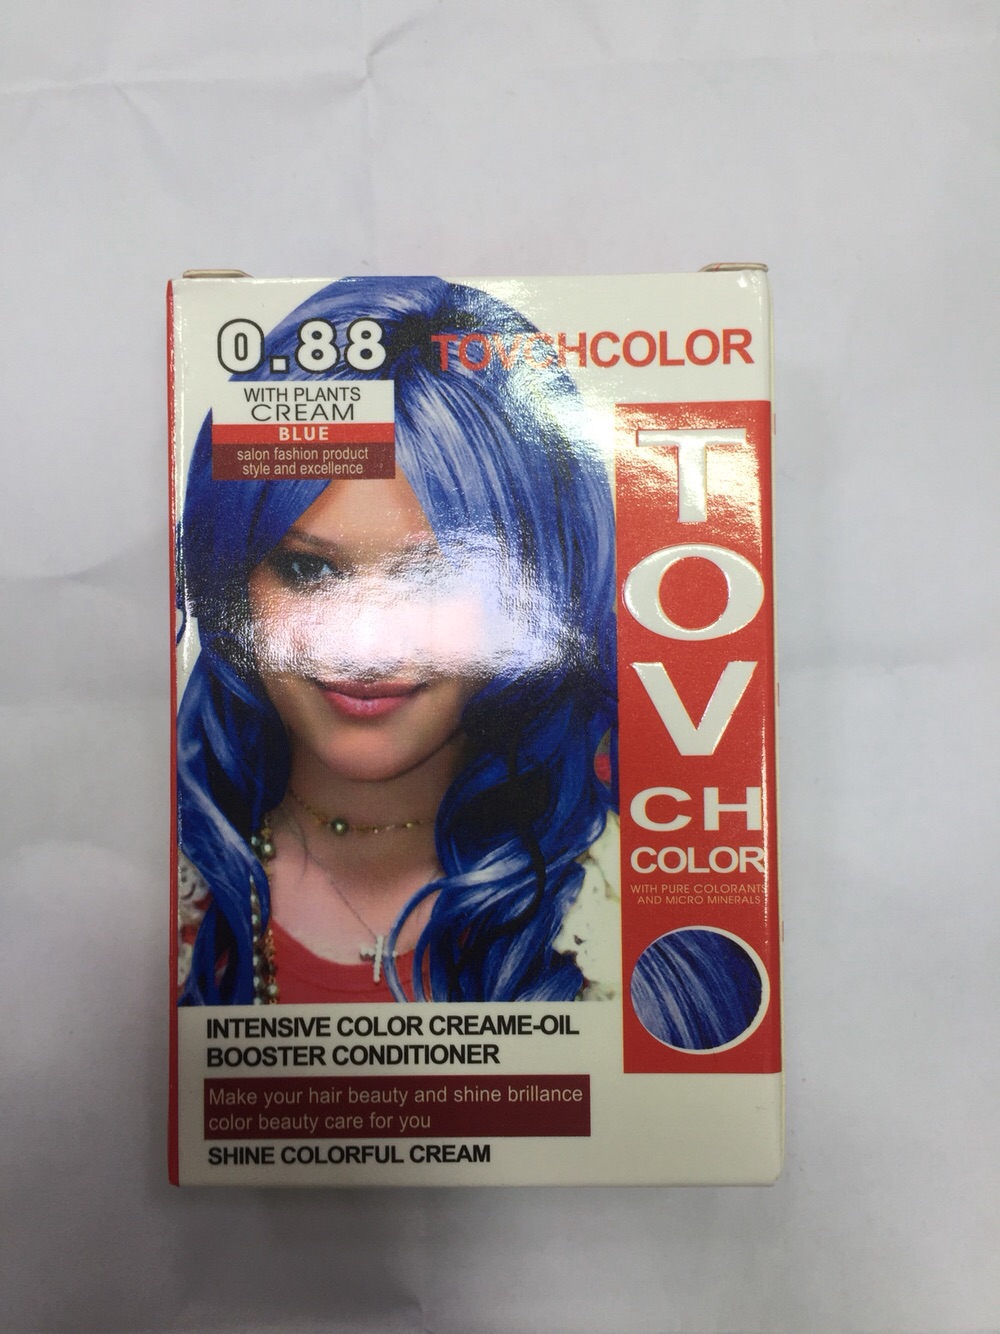 TOV Ch Intensive Color Cream oil Booster Conditioner Shine Colorful Cream